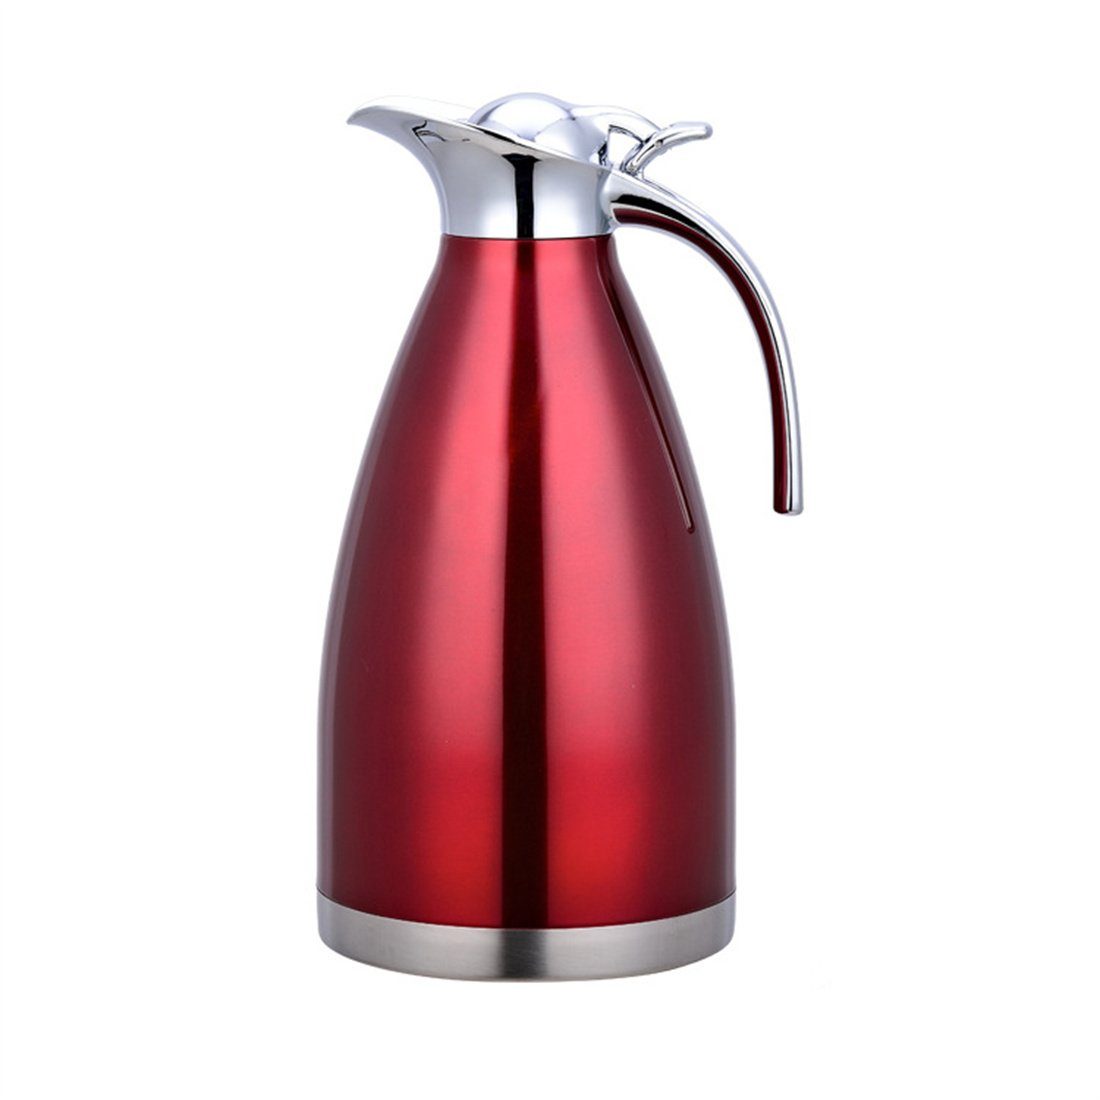 DÖRÖY Isolierkanne Isolierter Edelstahl-Wasserkocher, 2.0L Heißwasserkocher, Rot Kaffeekanne